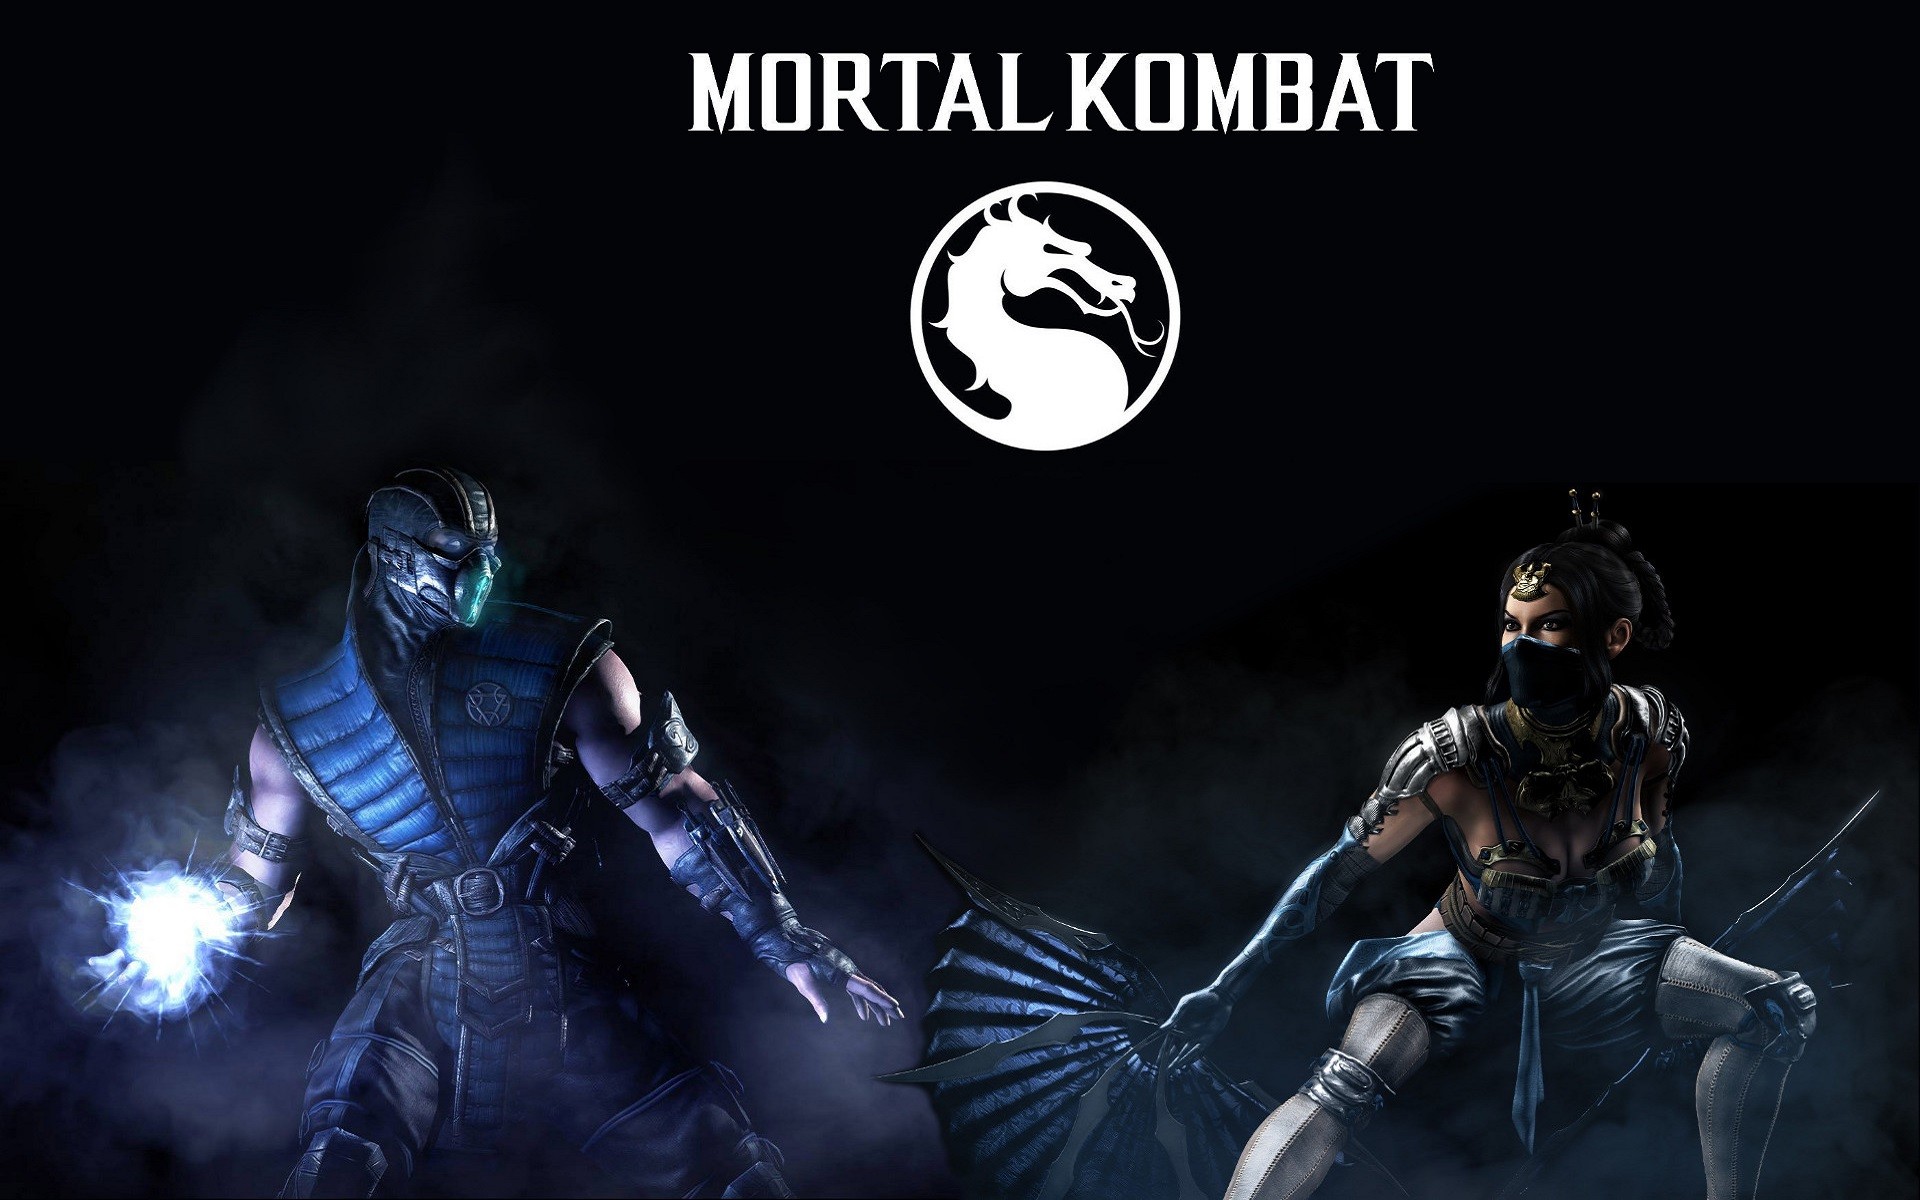 Sub Zero, Kitana, Mortal Kombat X, Mortal Kombat, Dragon, Mist, Video Games Wallpaper